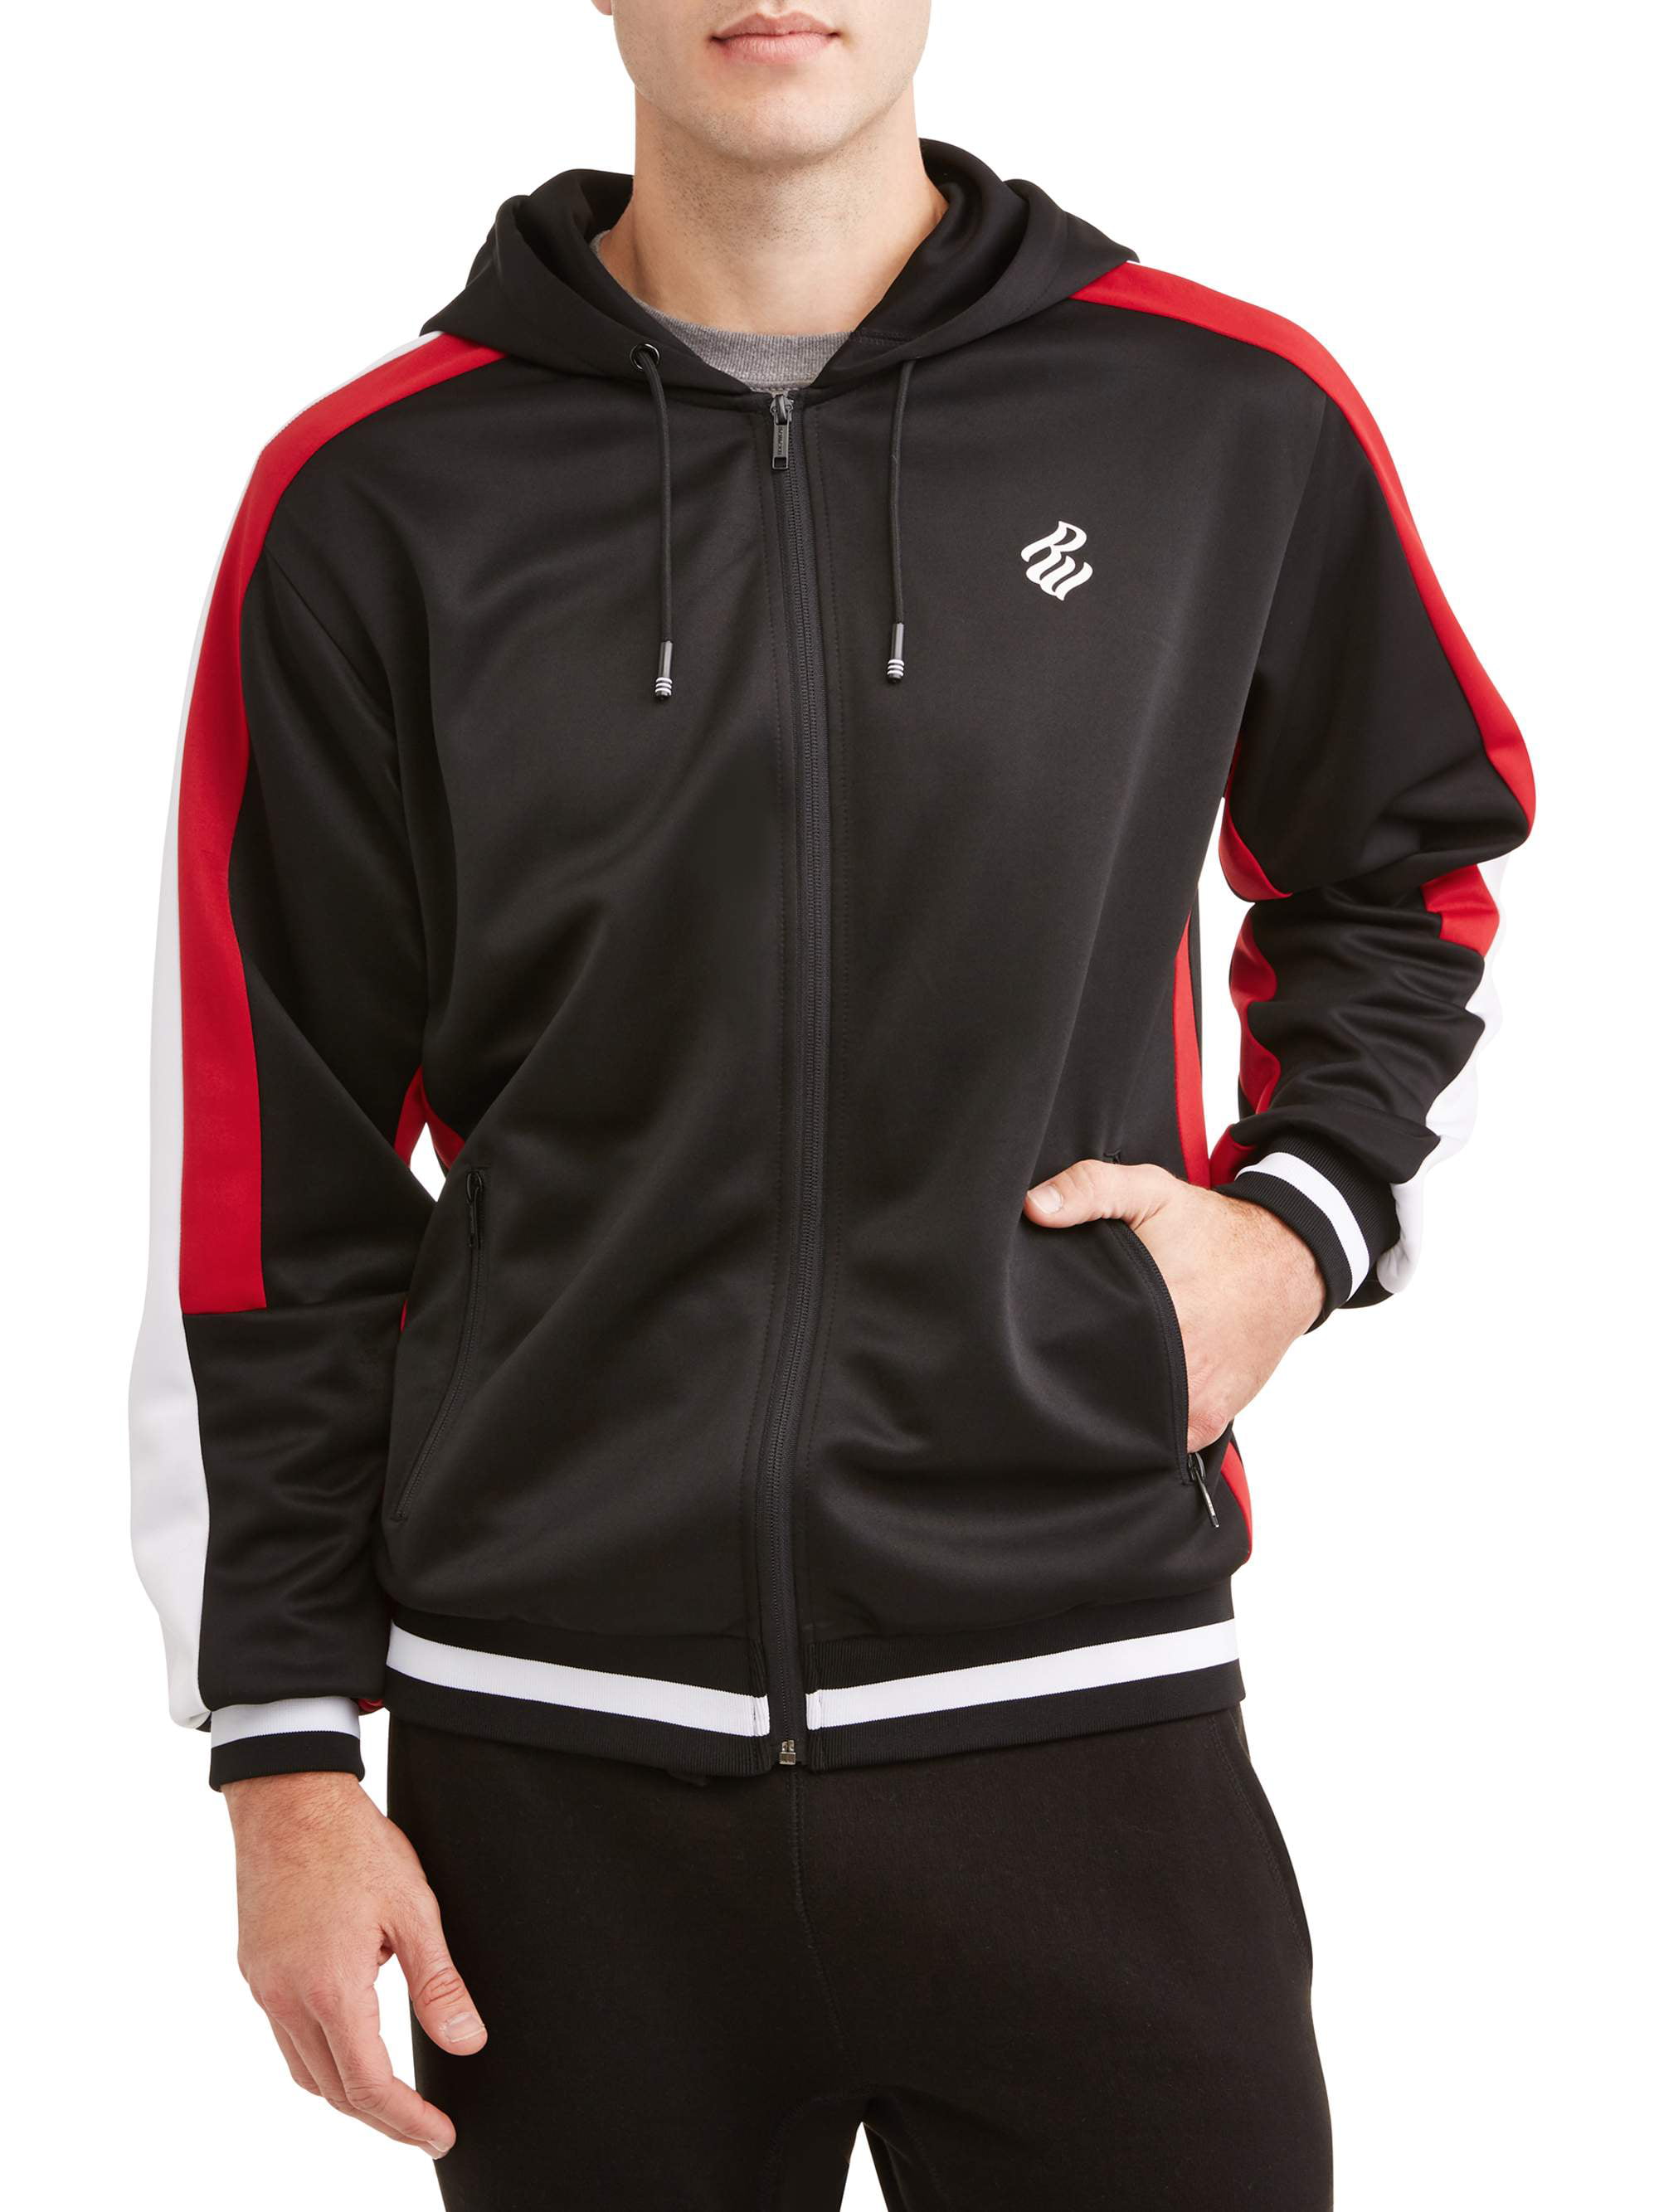 Rocawear Men's track jacket interlock, full zip hoodie - Walmart.com